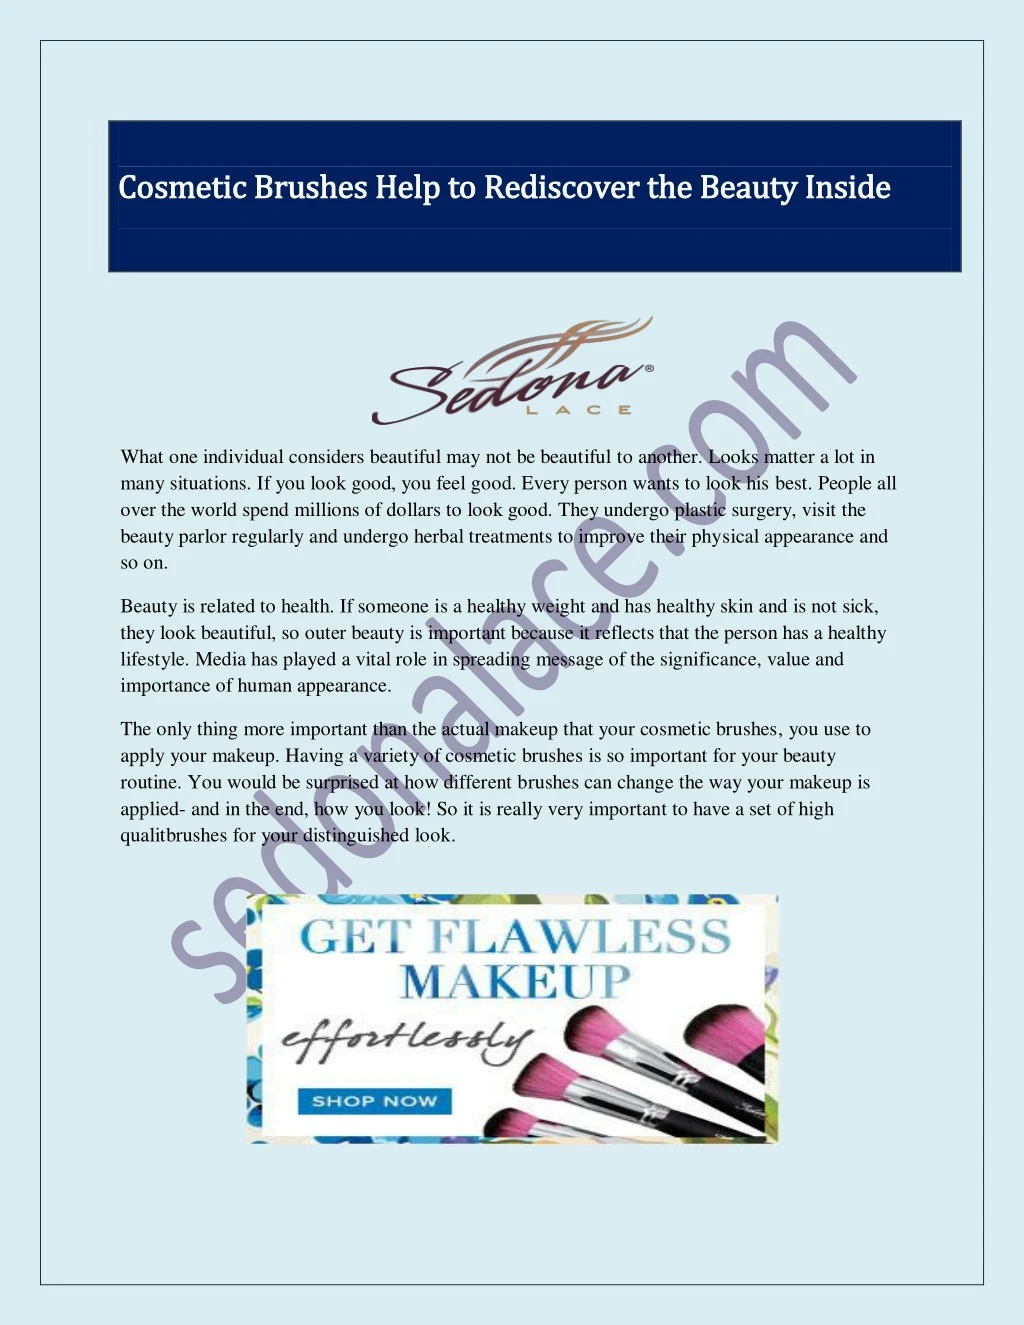 cosmetic brushes help to cosmetic brushes help